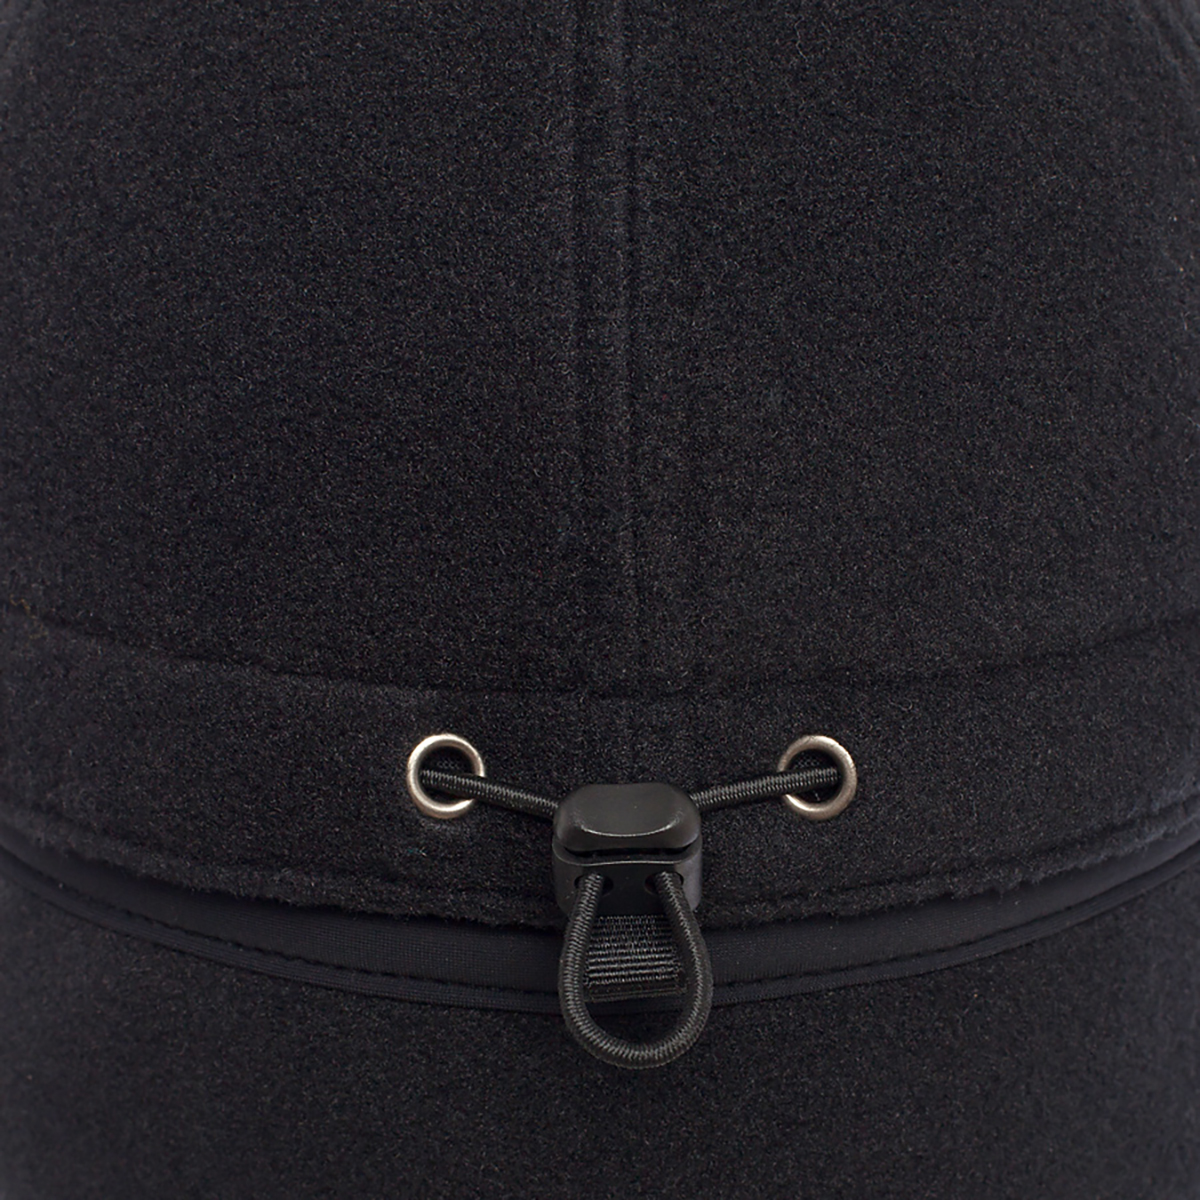 Теплая кепка BASK, размер L, цвет черный 4027-9009-L RASH CAP - фото 2